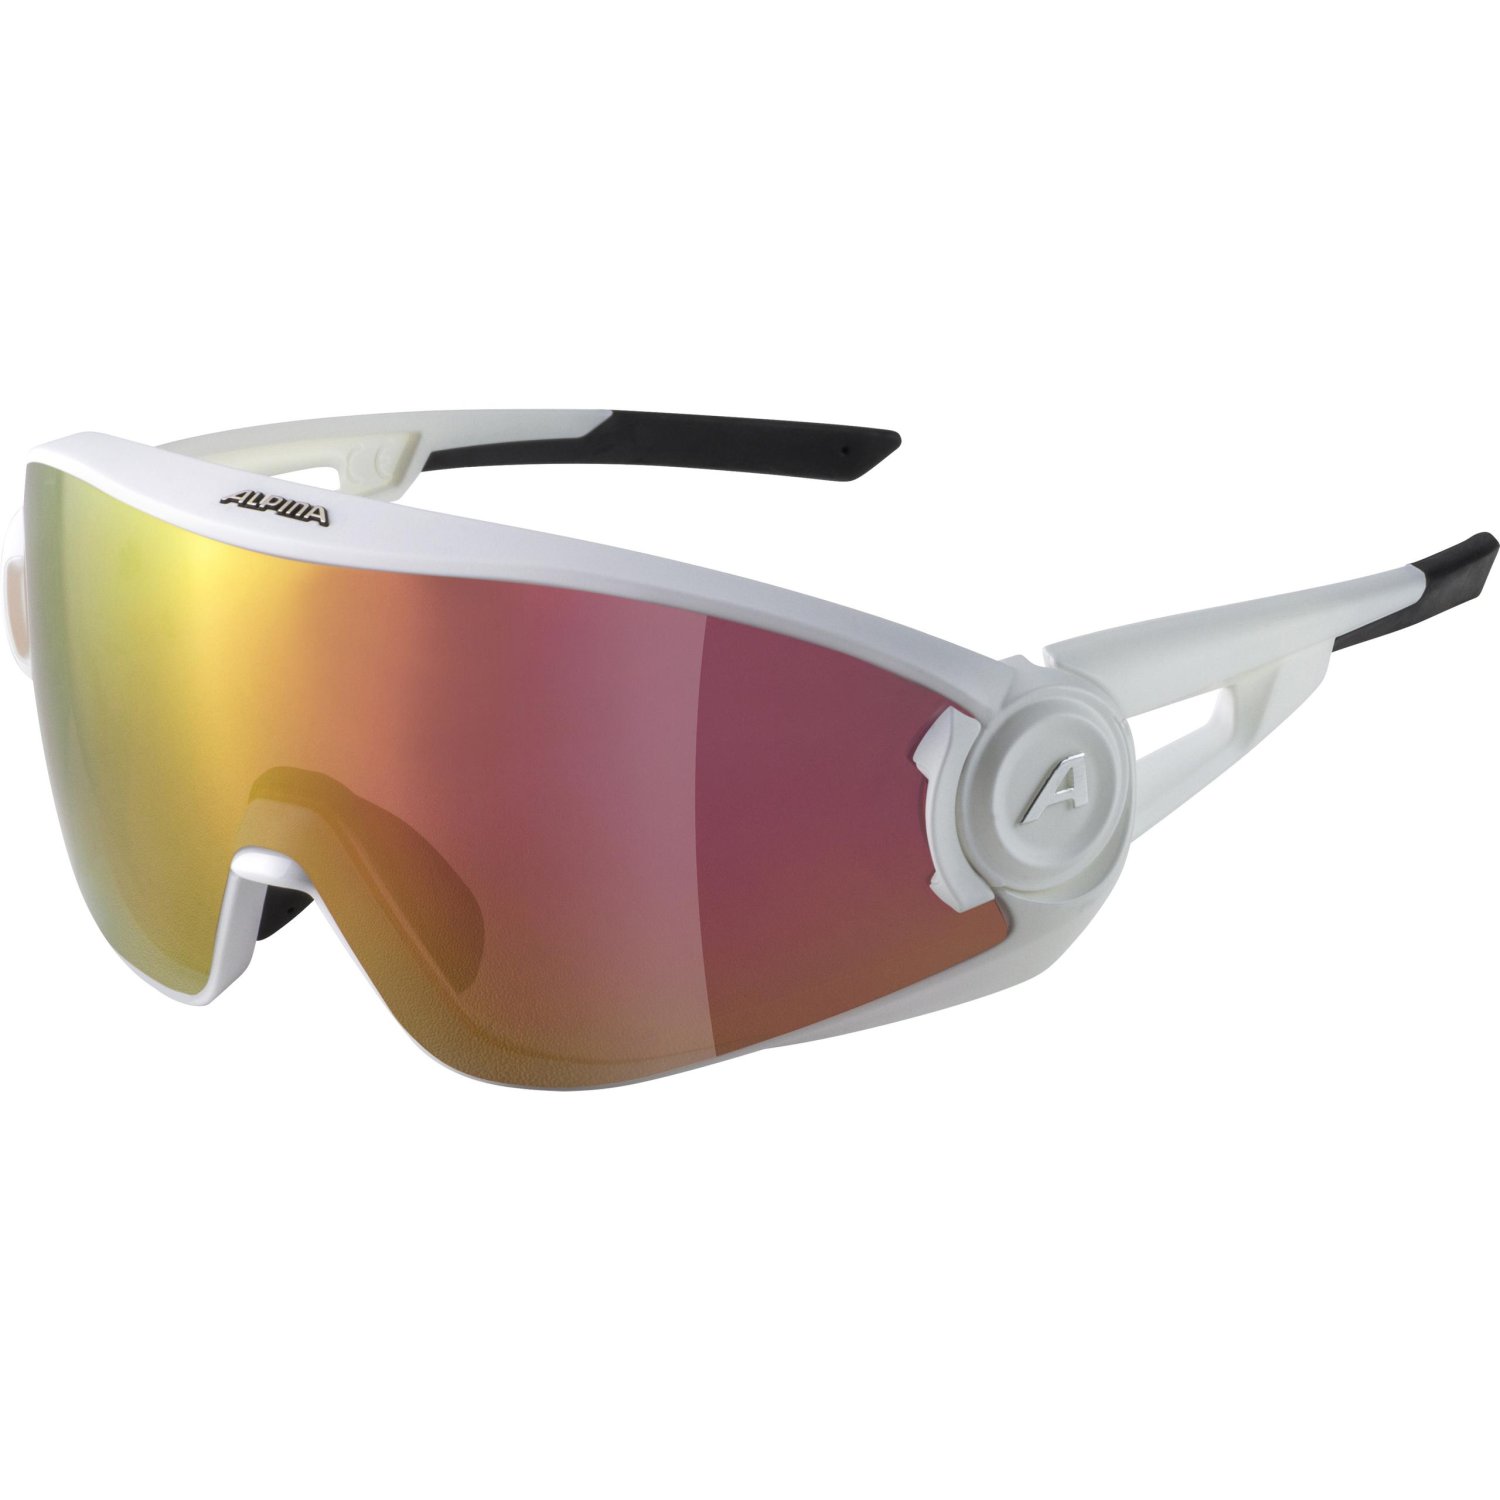 Очки велосипедные Alpina 5W1NG Q+VM, солнцезащитные, White Matt/Red Mirror, 2021, A8653510 очки велосипедные alpina tri effect солнцезащитные white 8398310